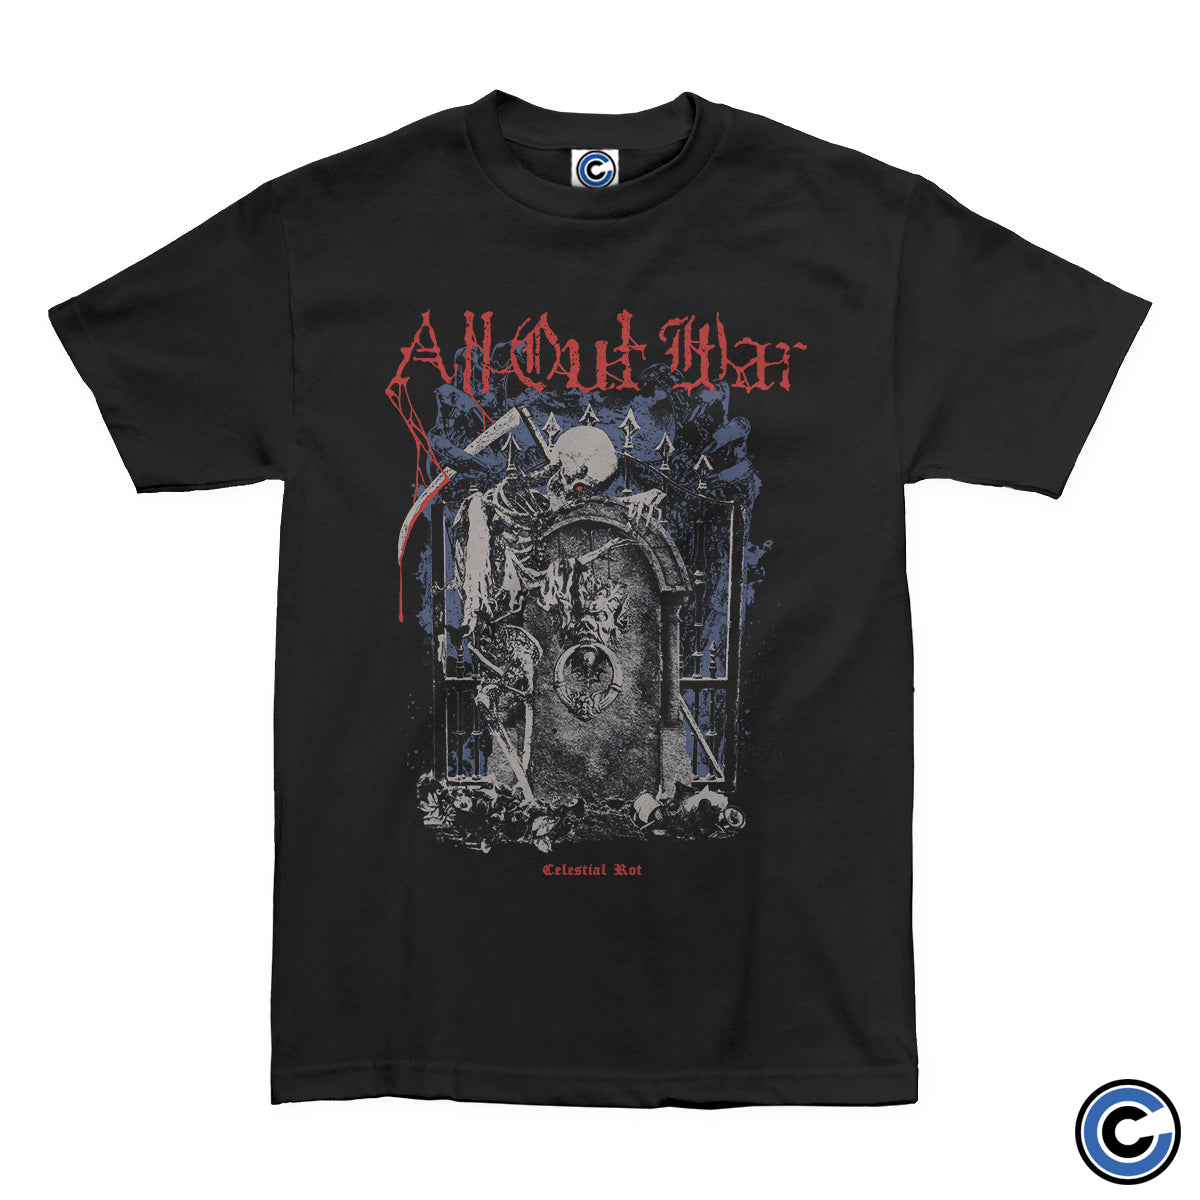 All Out War "Celestial" Shirt